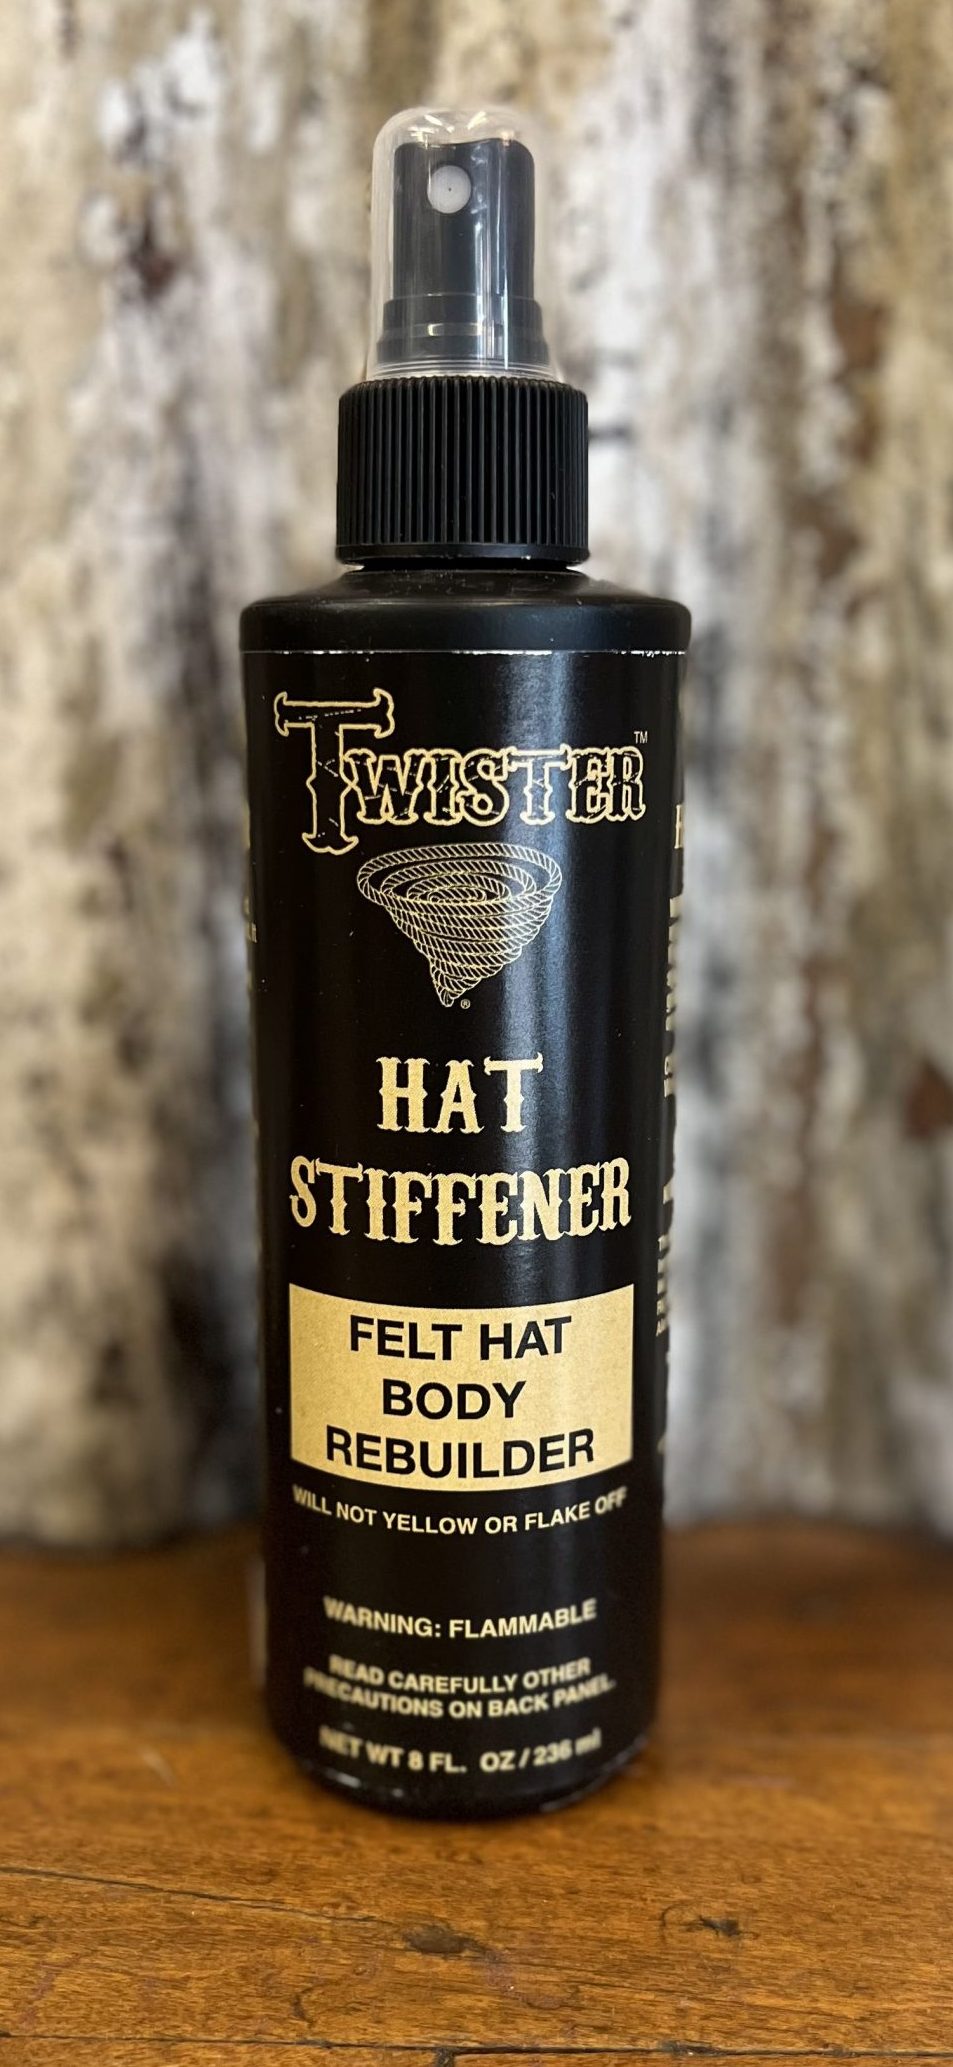 Hat Stiffener (Felt Hat Body Rebuilder)